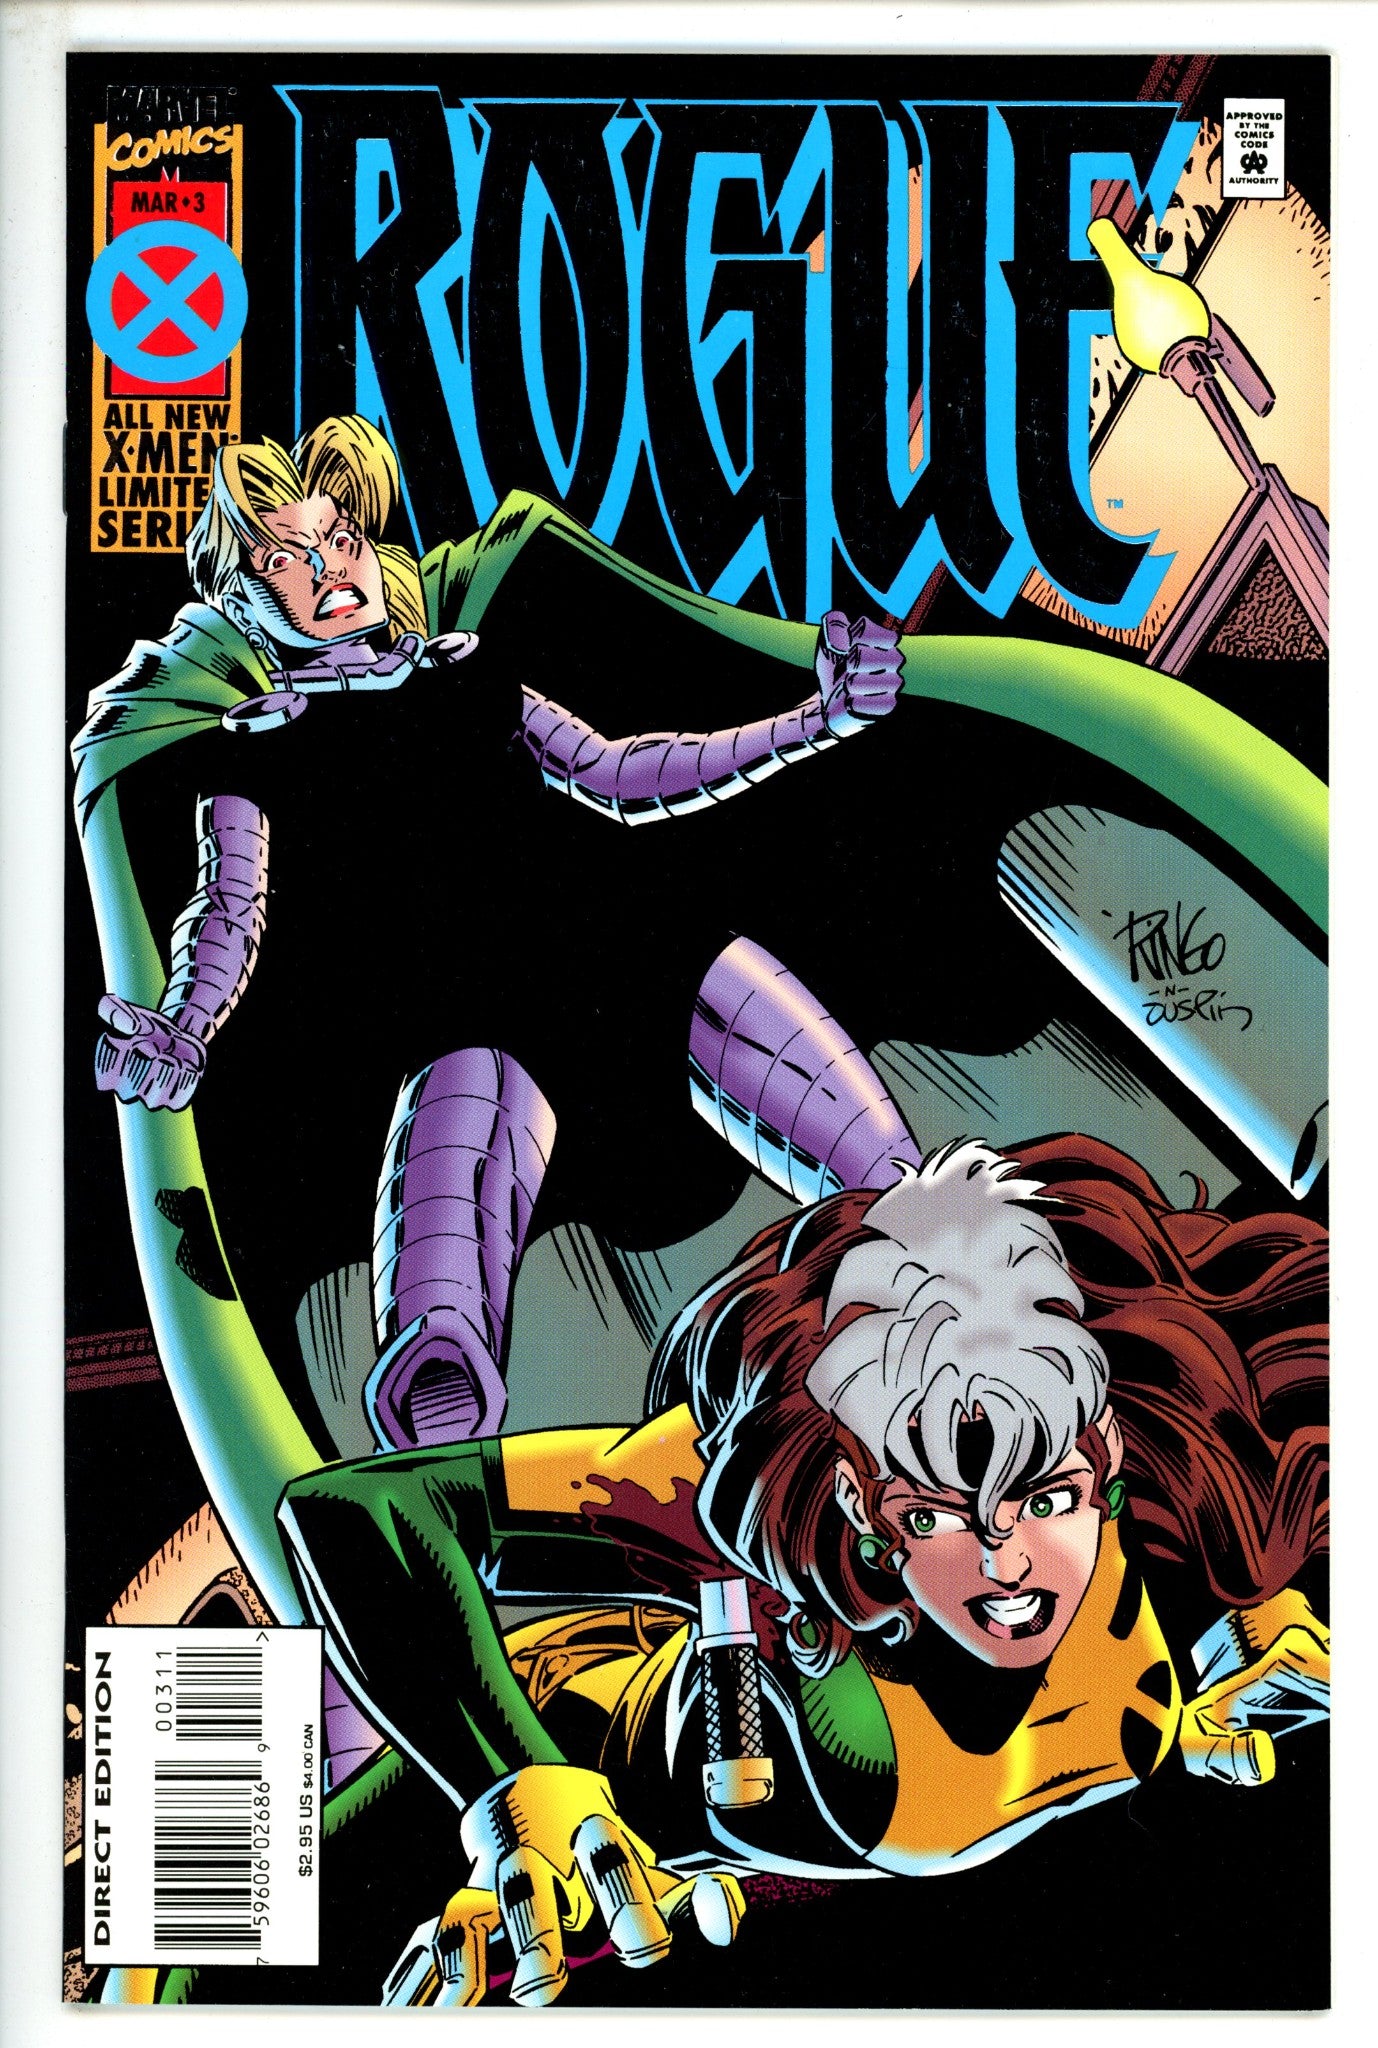 Rogue Vol 1 3 (1995)